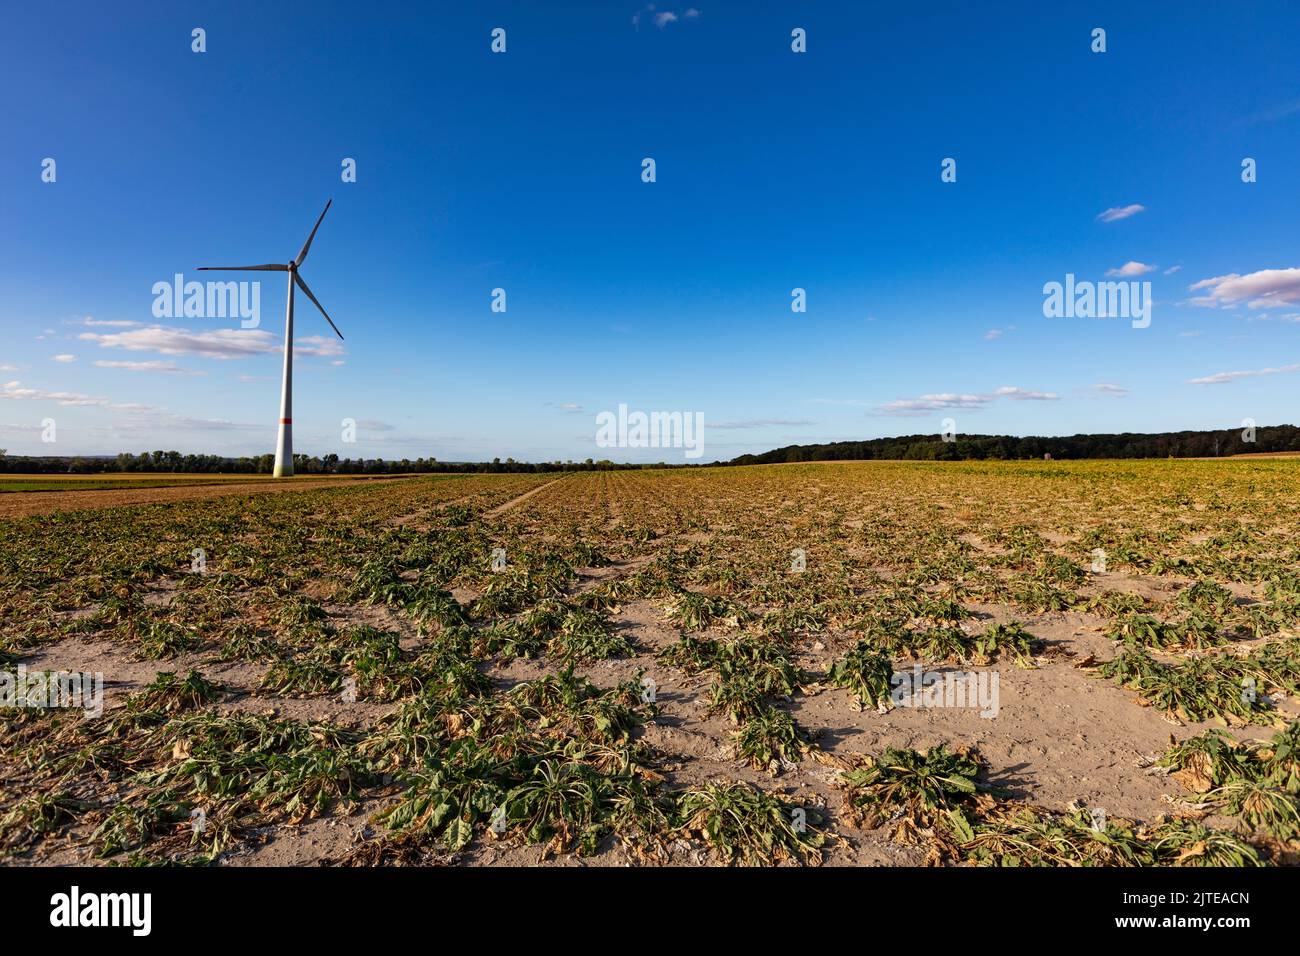 Windkraftanlage in Issum vor blauem Himmel Stockfoto